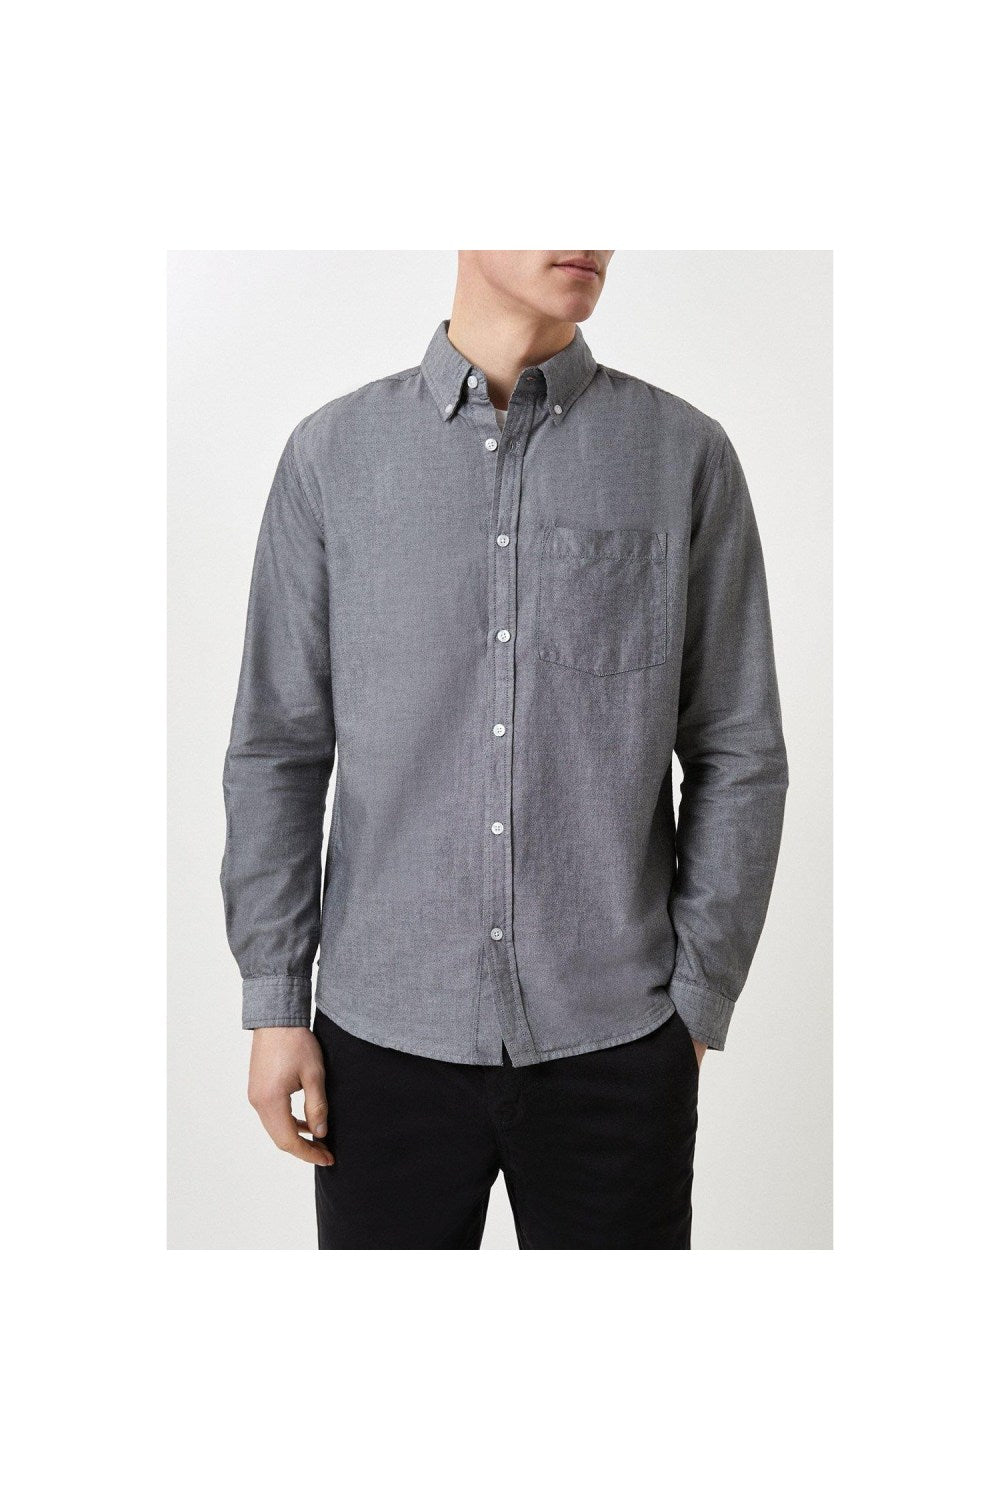 Mens Oxford Pocket Long-Sleeved Shirt - Charcoal